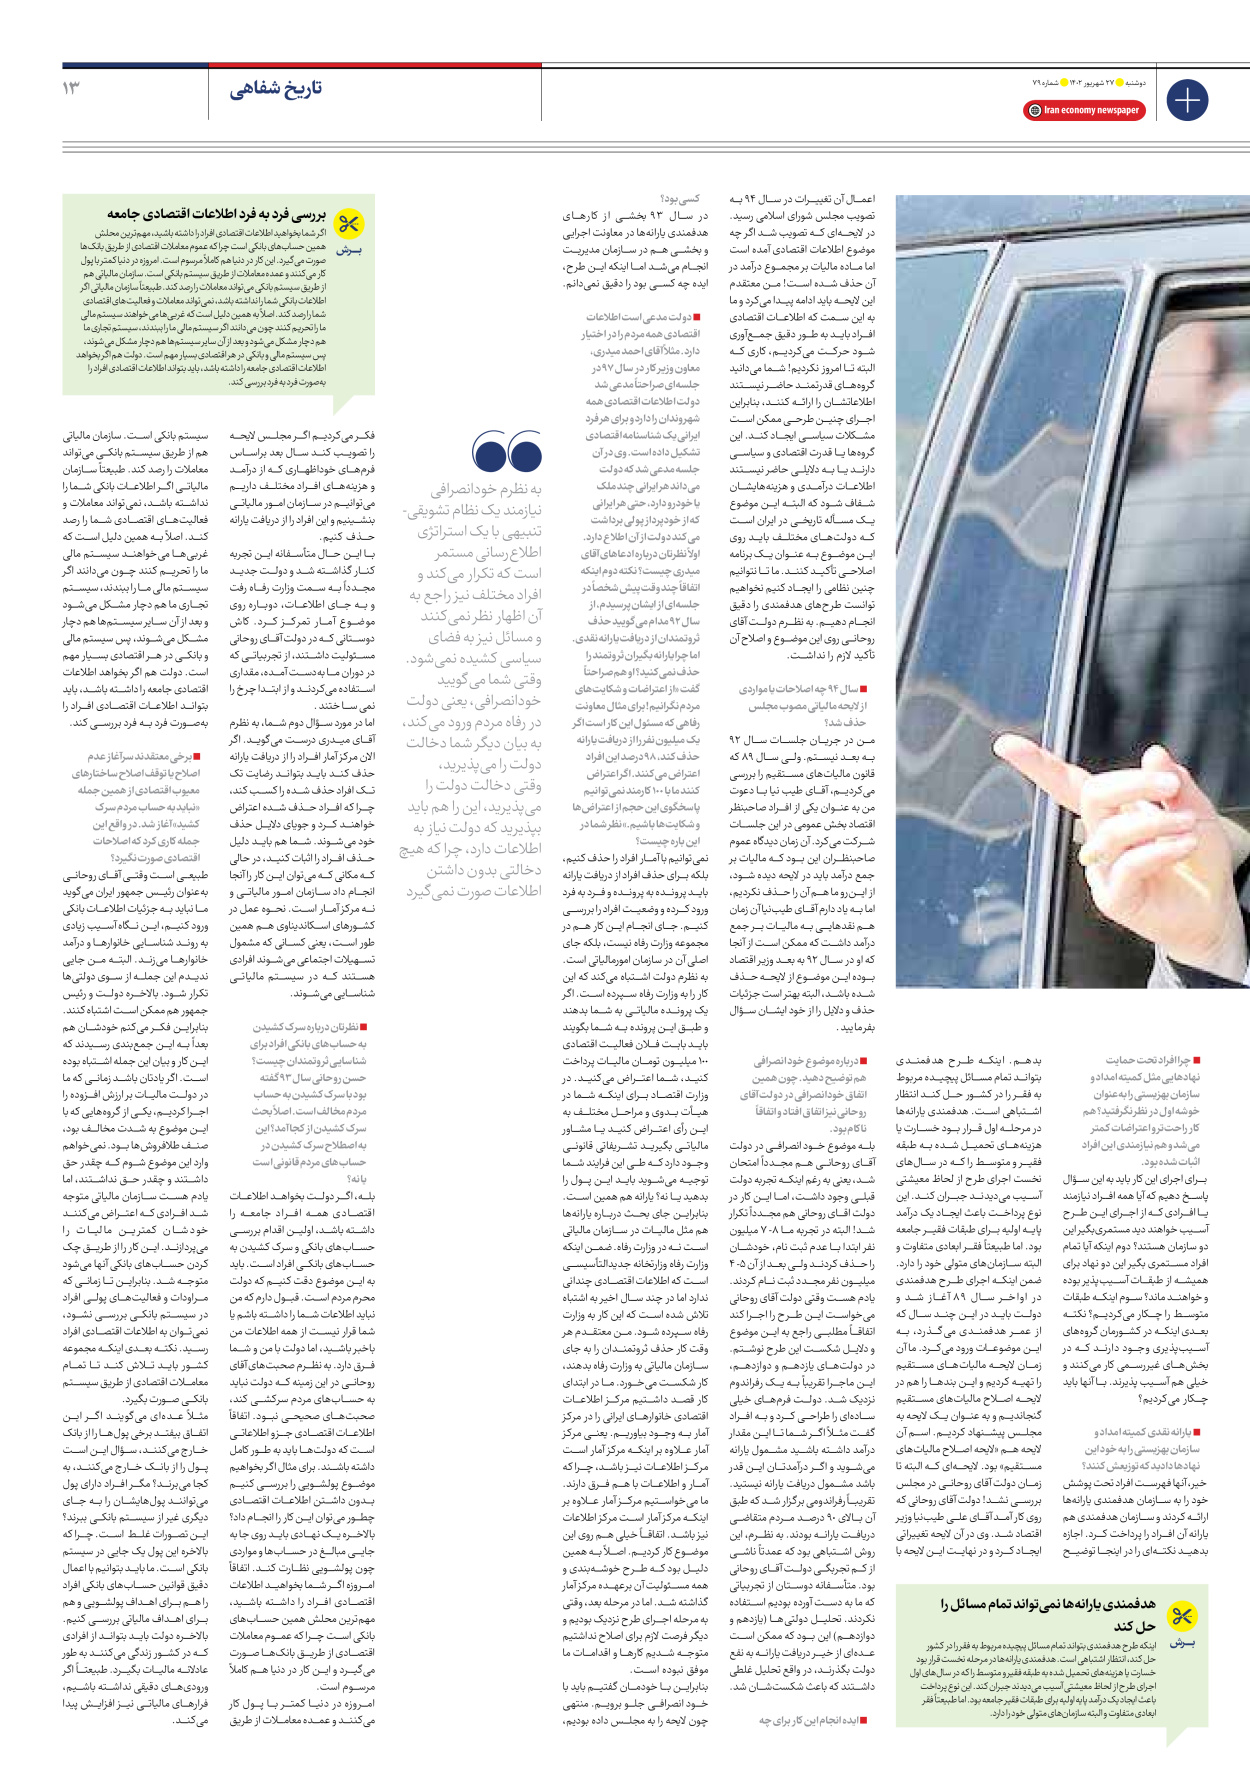 روزنامه ایران اقتصادی - شماره هفتاد و نه - ۲۷ شهریور ۱۴۰۲ - صفحه ۱۳